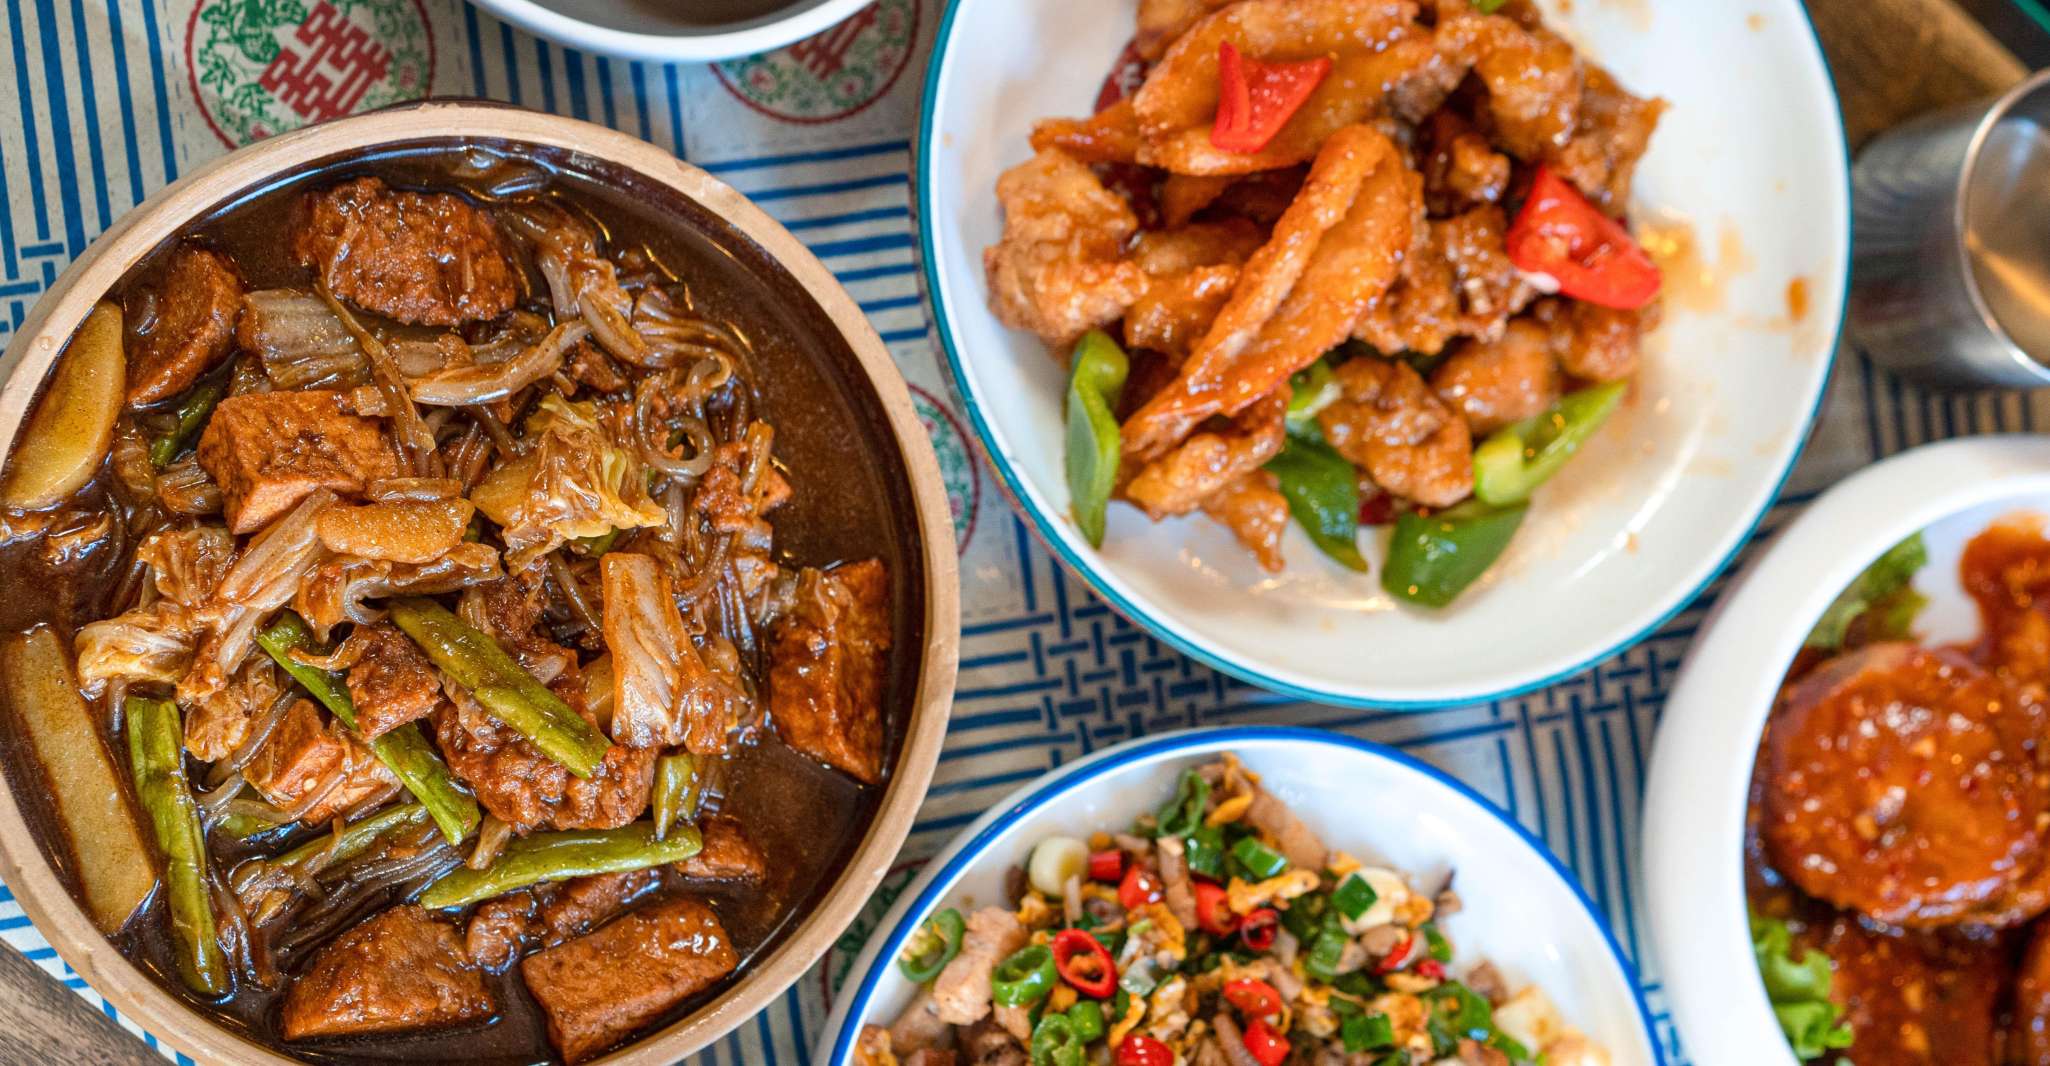 Beijing Hutong Walk, Food & Beer Tour at Hidden Restaurants - Housity